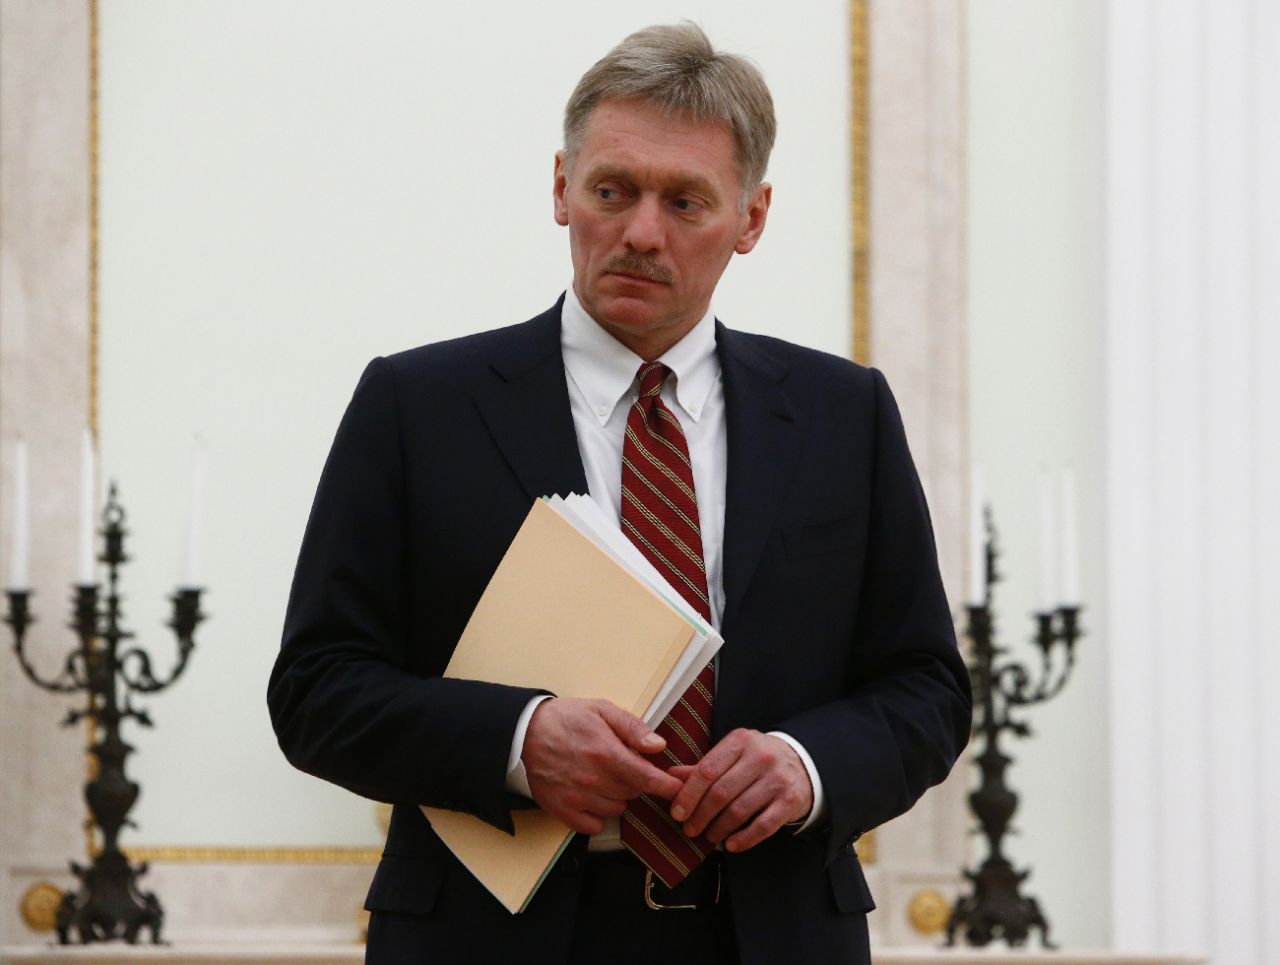 Le porte-parole du Kremlin, Dmitri Peskov, a annoncé mardi à la presse que si Alexeï Kouzmitchev le souhaite, "nous aiderons bien sûr à protéger ses droits en tant que citoyen russe". AFP / Sergei Karpukhin